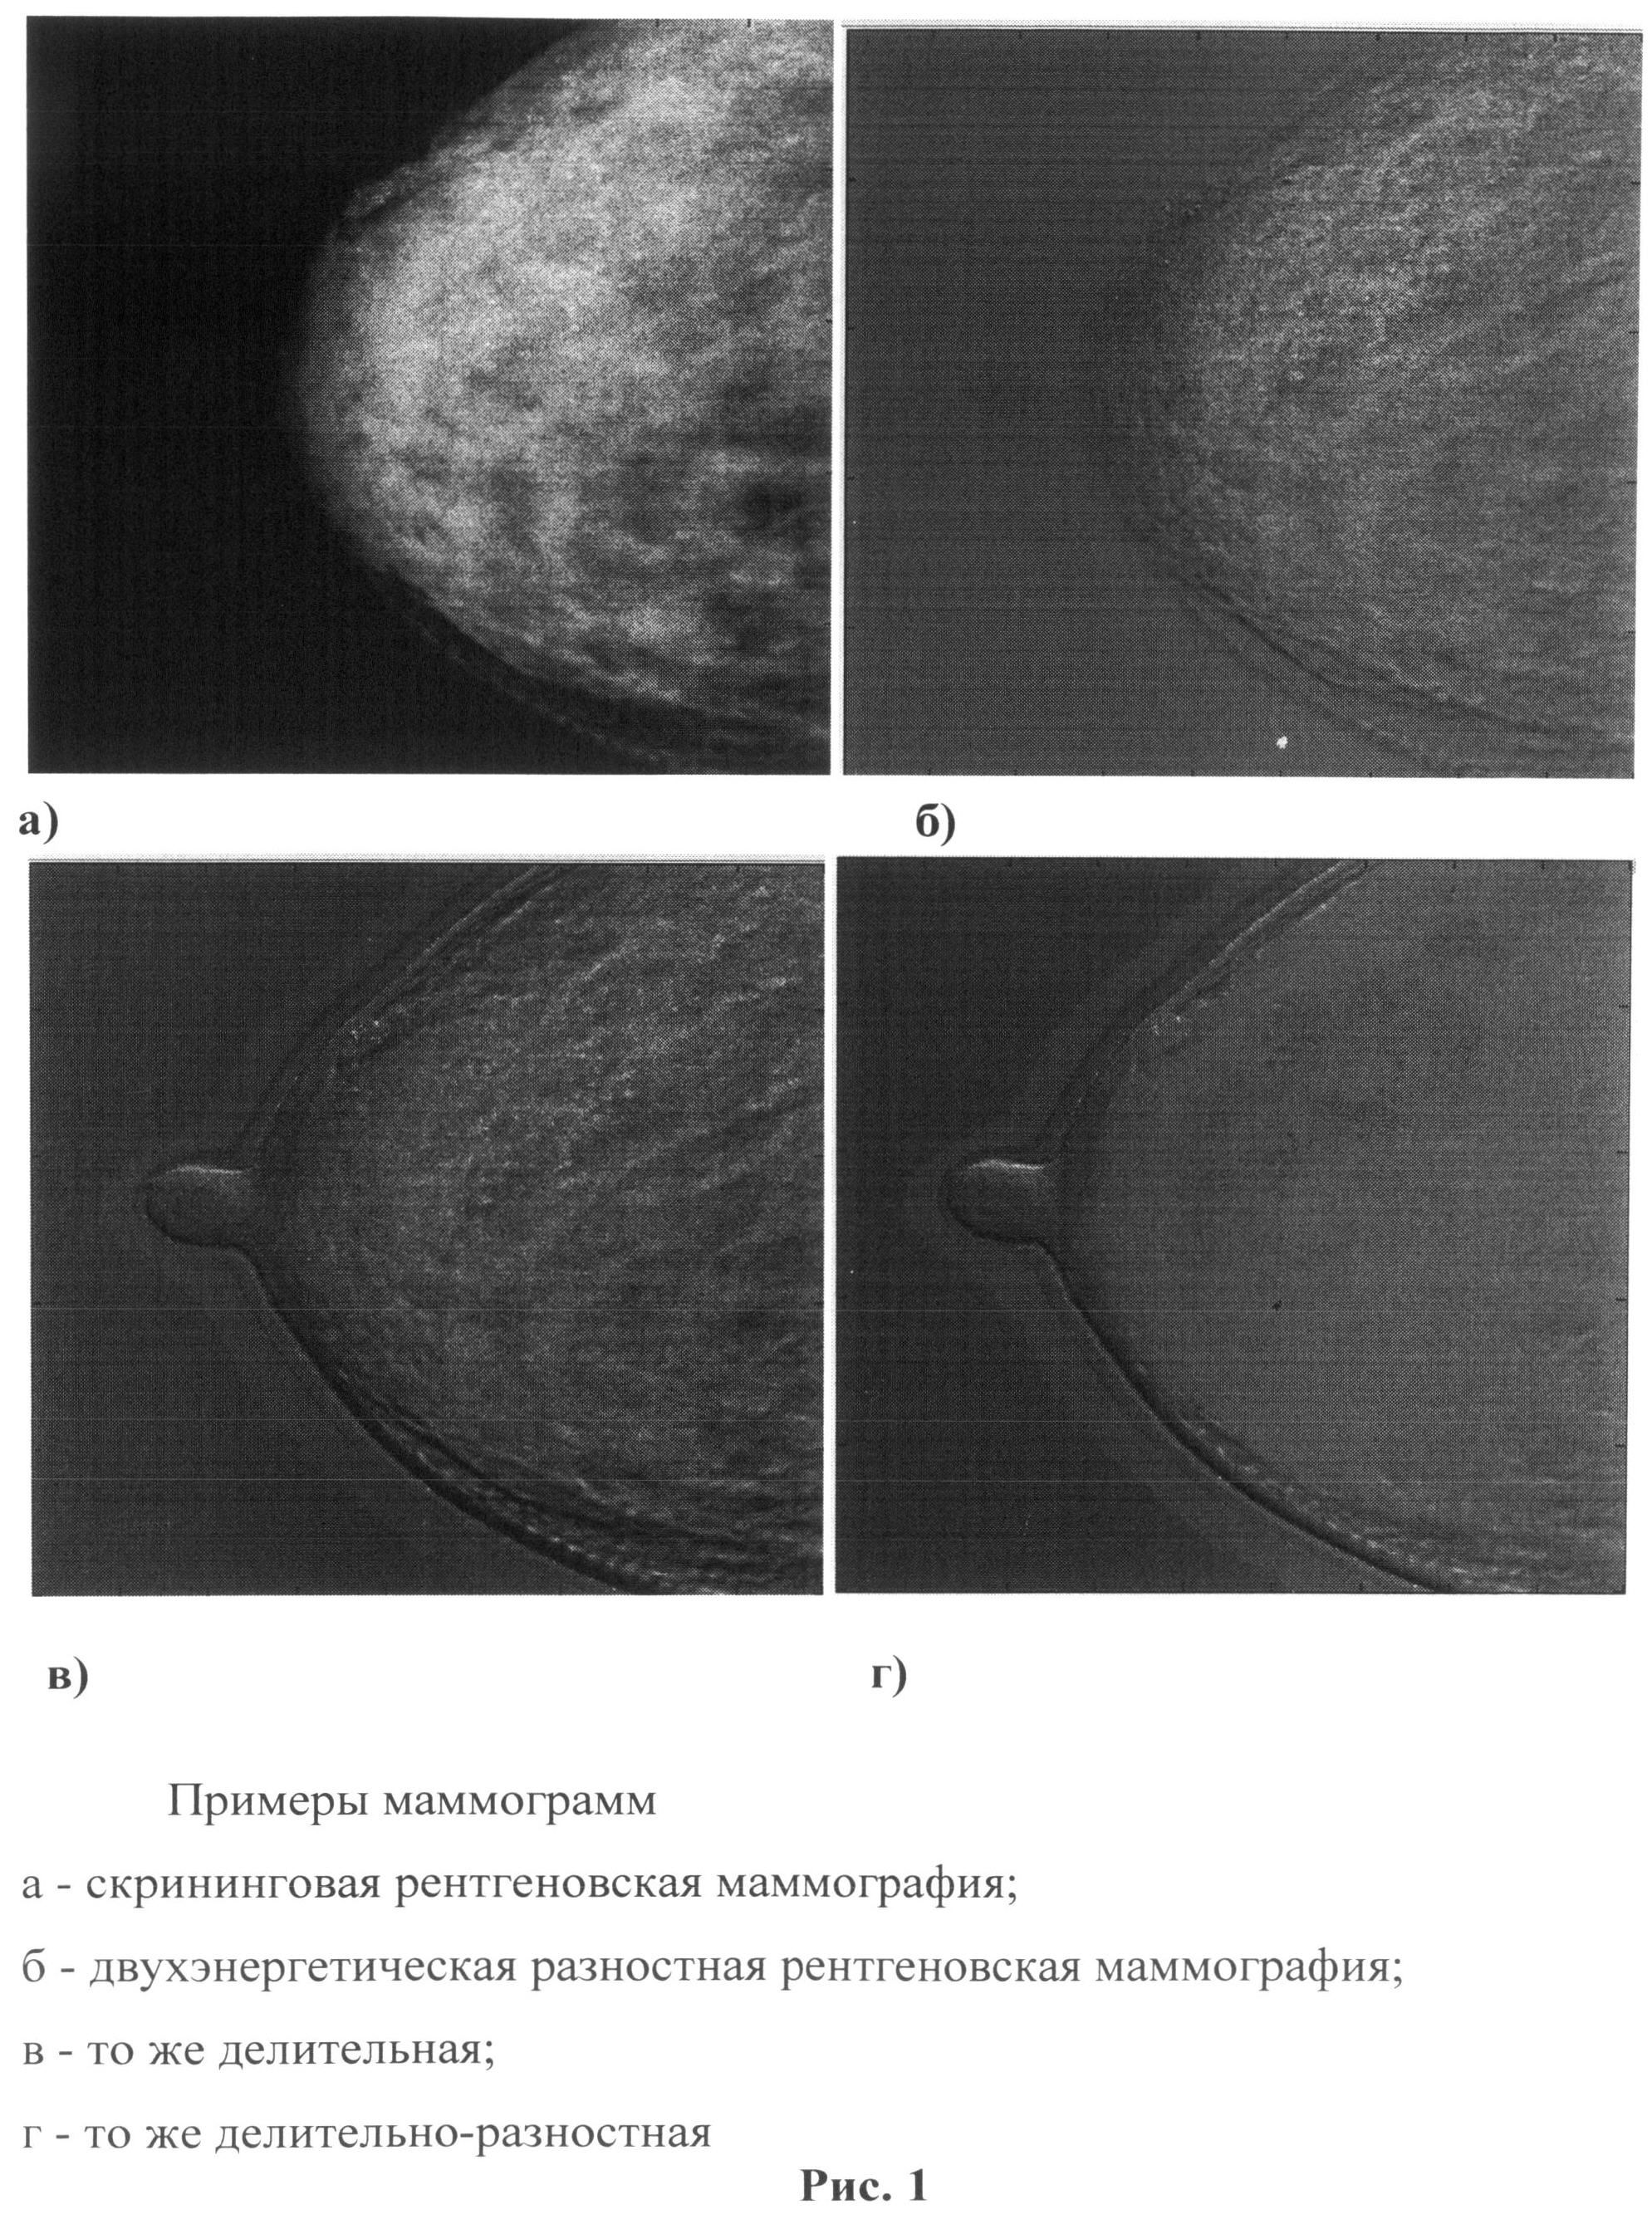 Двухэнергетическая маммография